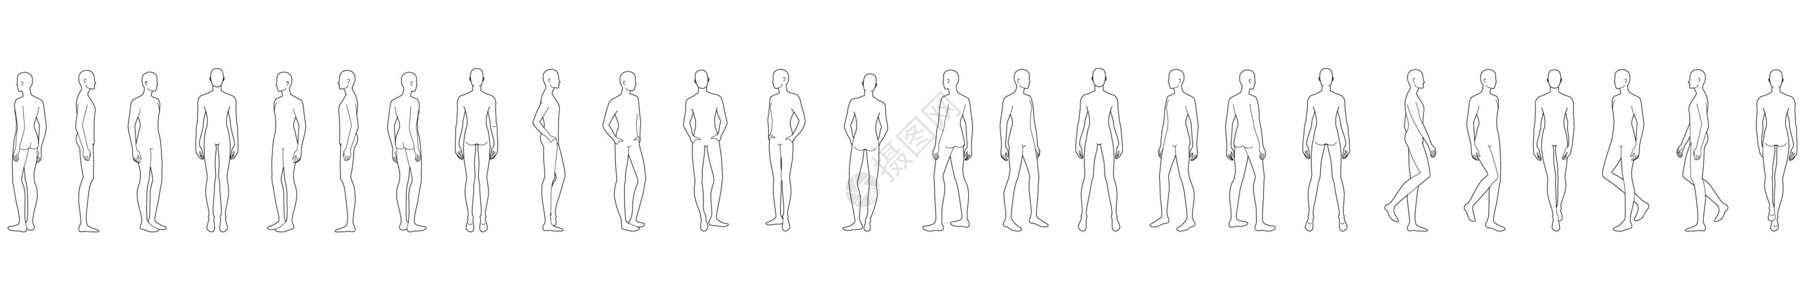 25名男子的时装模版服饰男生草图姿势解剖学模型插图空白收藏数字背景图片